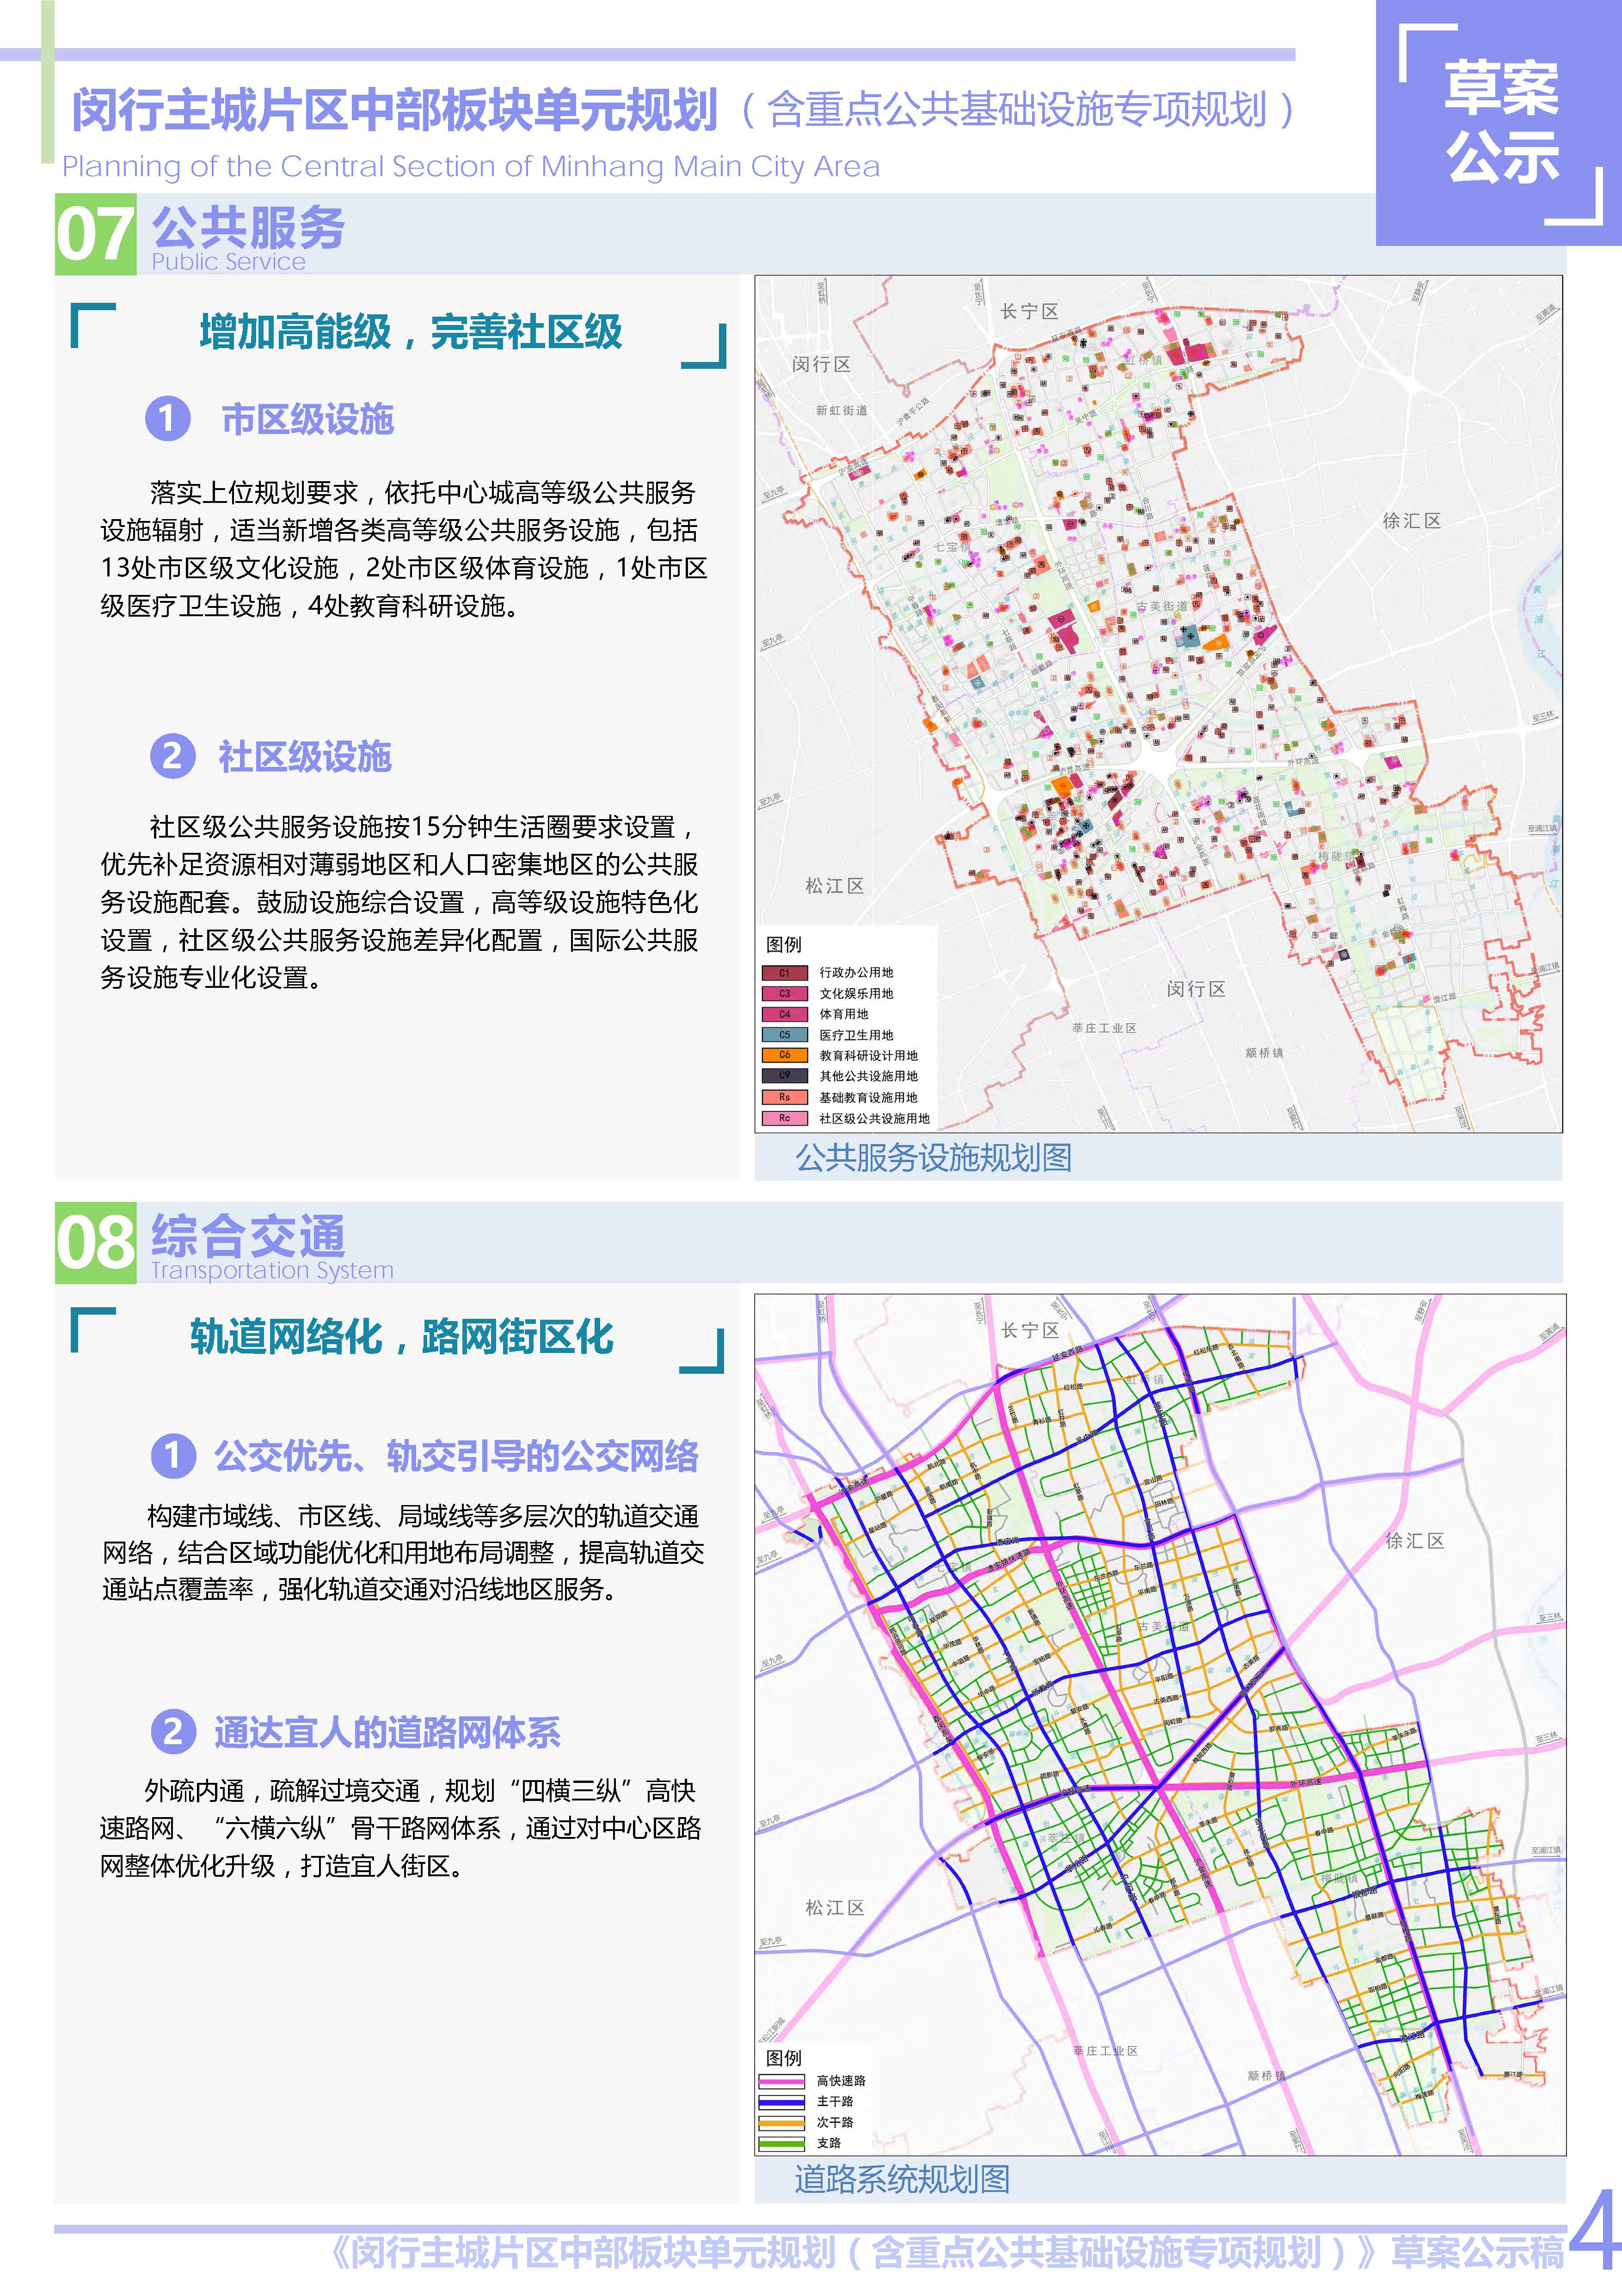 上海市闵行主城片区中部板块单元规划草案公示稿-草案公示公告5.jpg